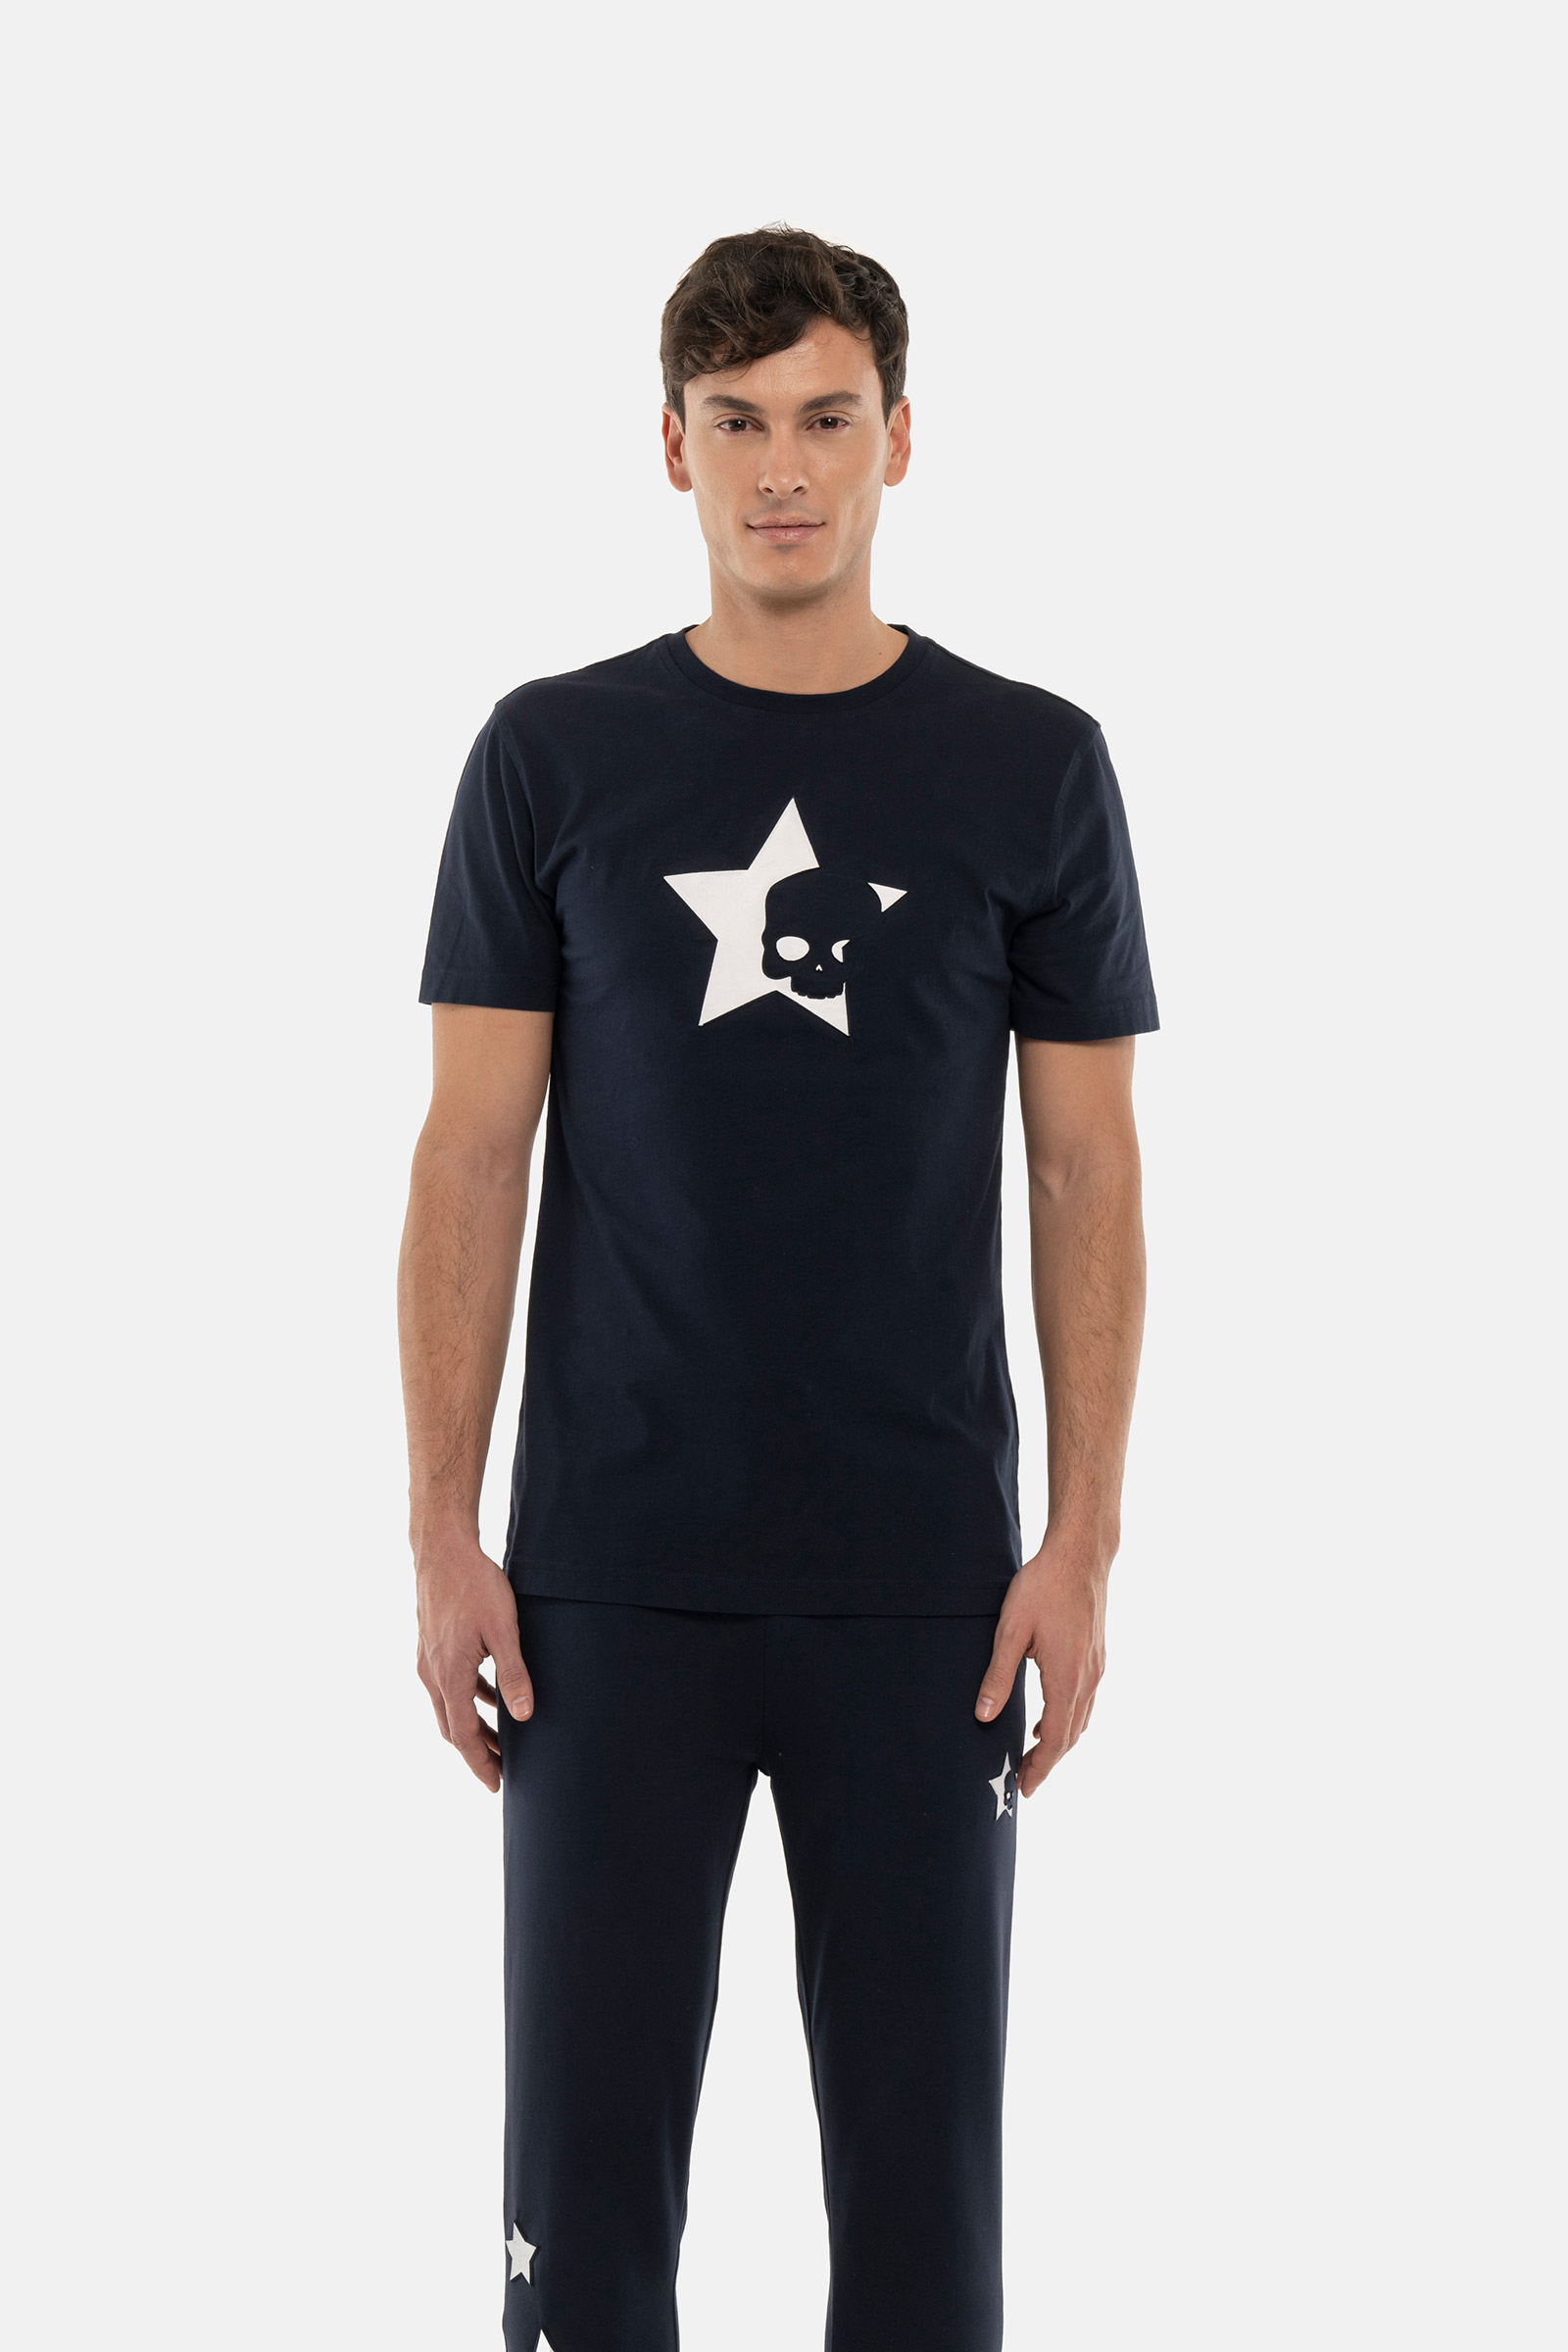 STARS TEE - Apparel - Hydrogen - Luxury Sportwear